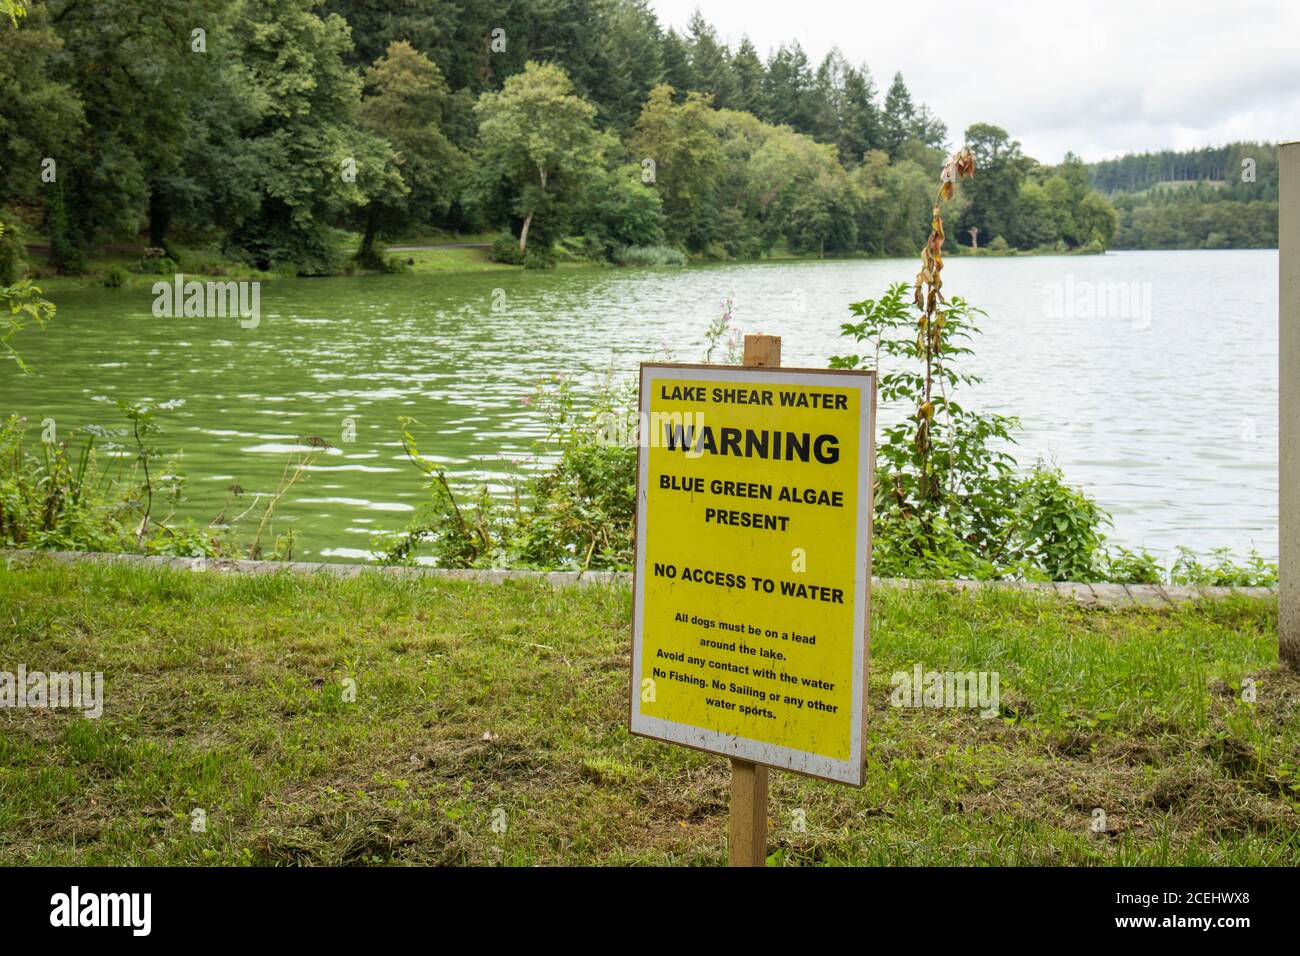 Le lac à Shearwater avis d'avertissement concernant les algues bleues qui sont présentes dans l'eau et un danger . Longleat Estate, Wiltshire, Angleterre, Royaume-Uni Banque D'Images